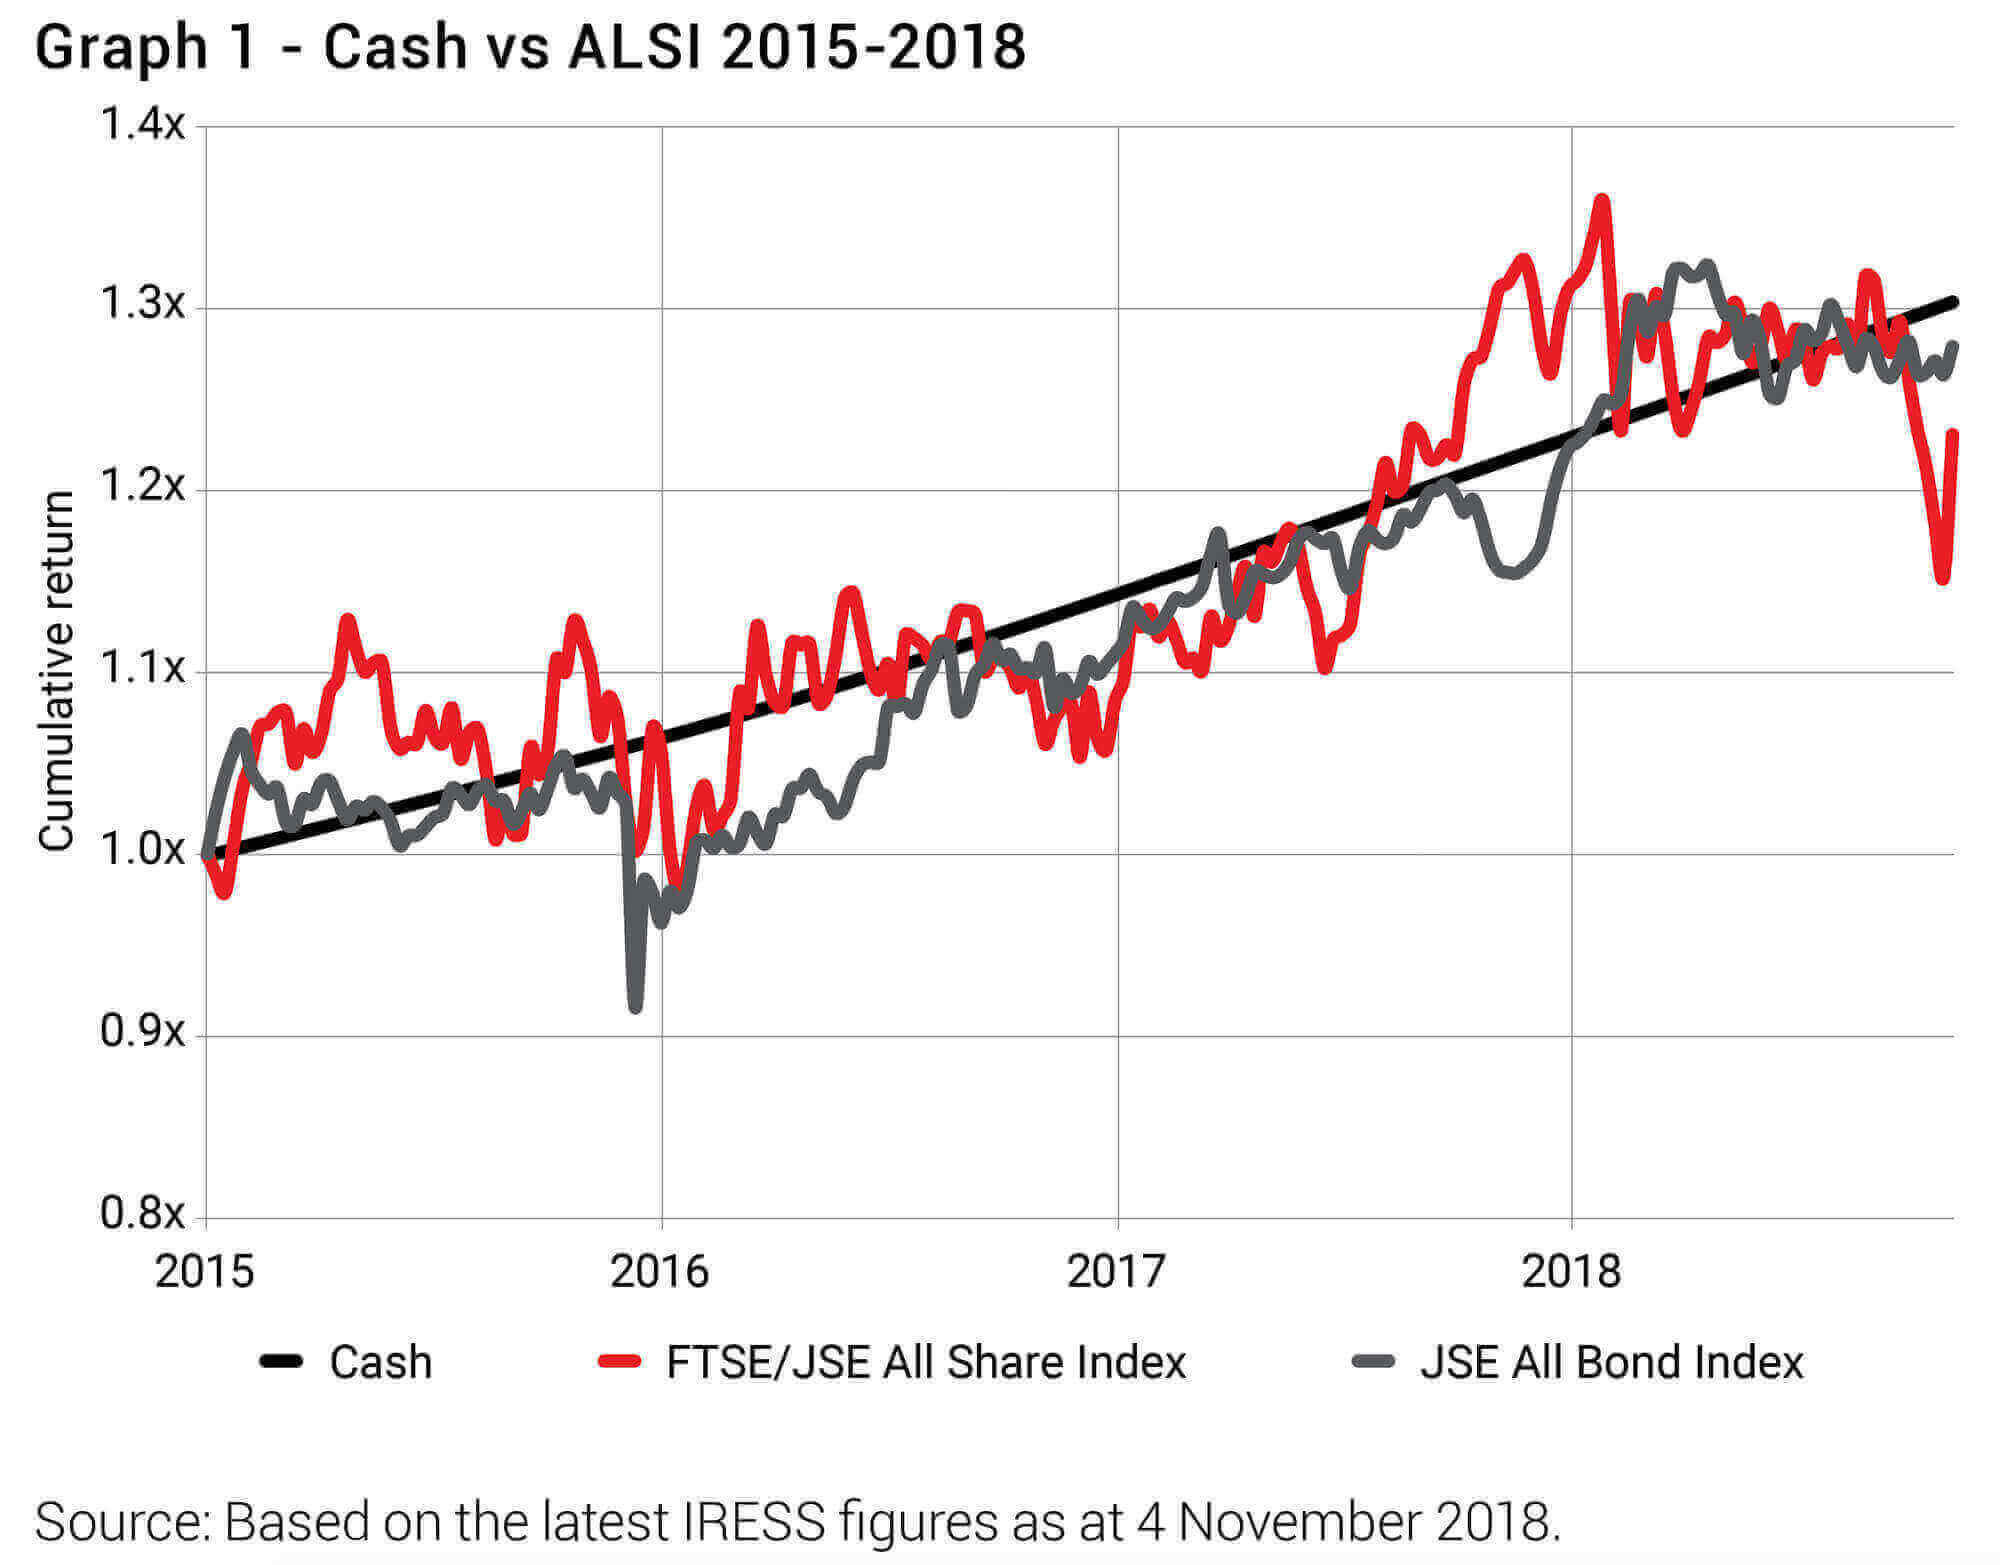 Cash vs ALSI 2015-2018 (Allan Gray)